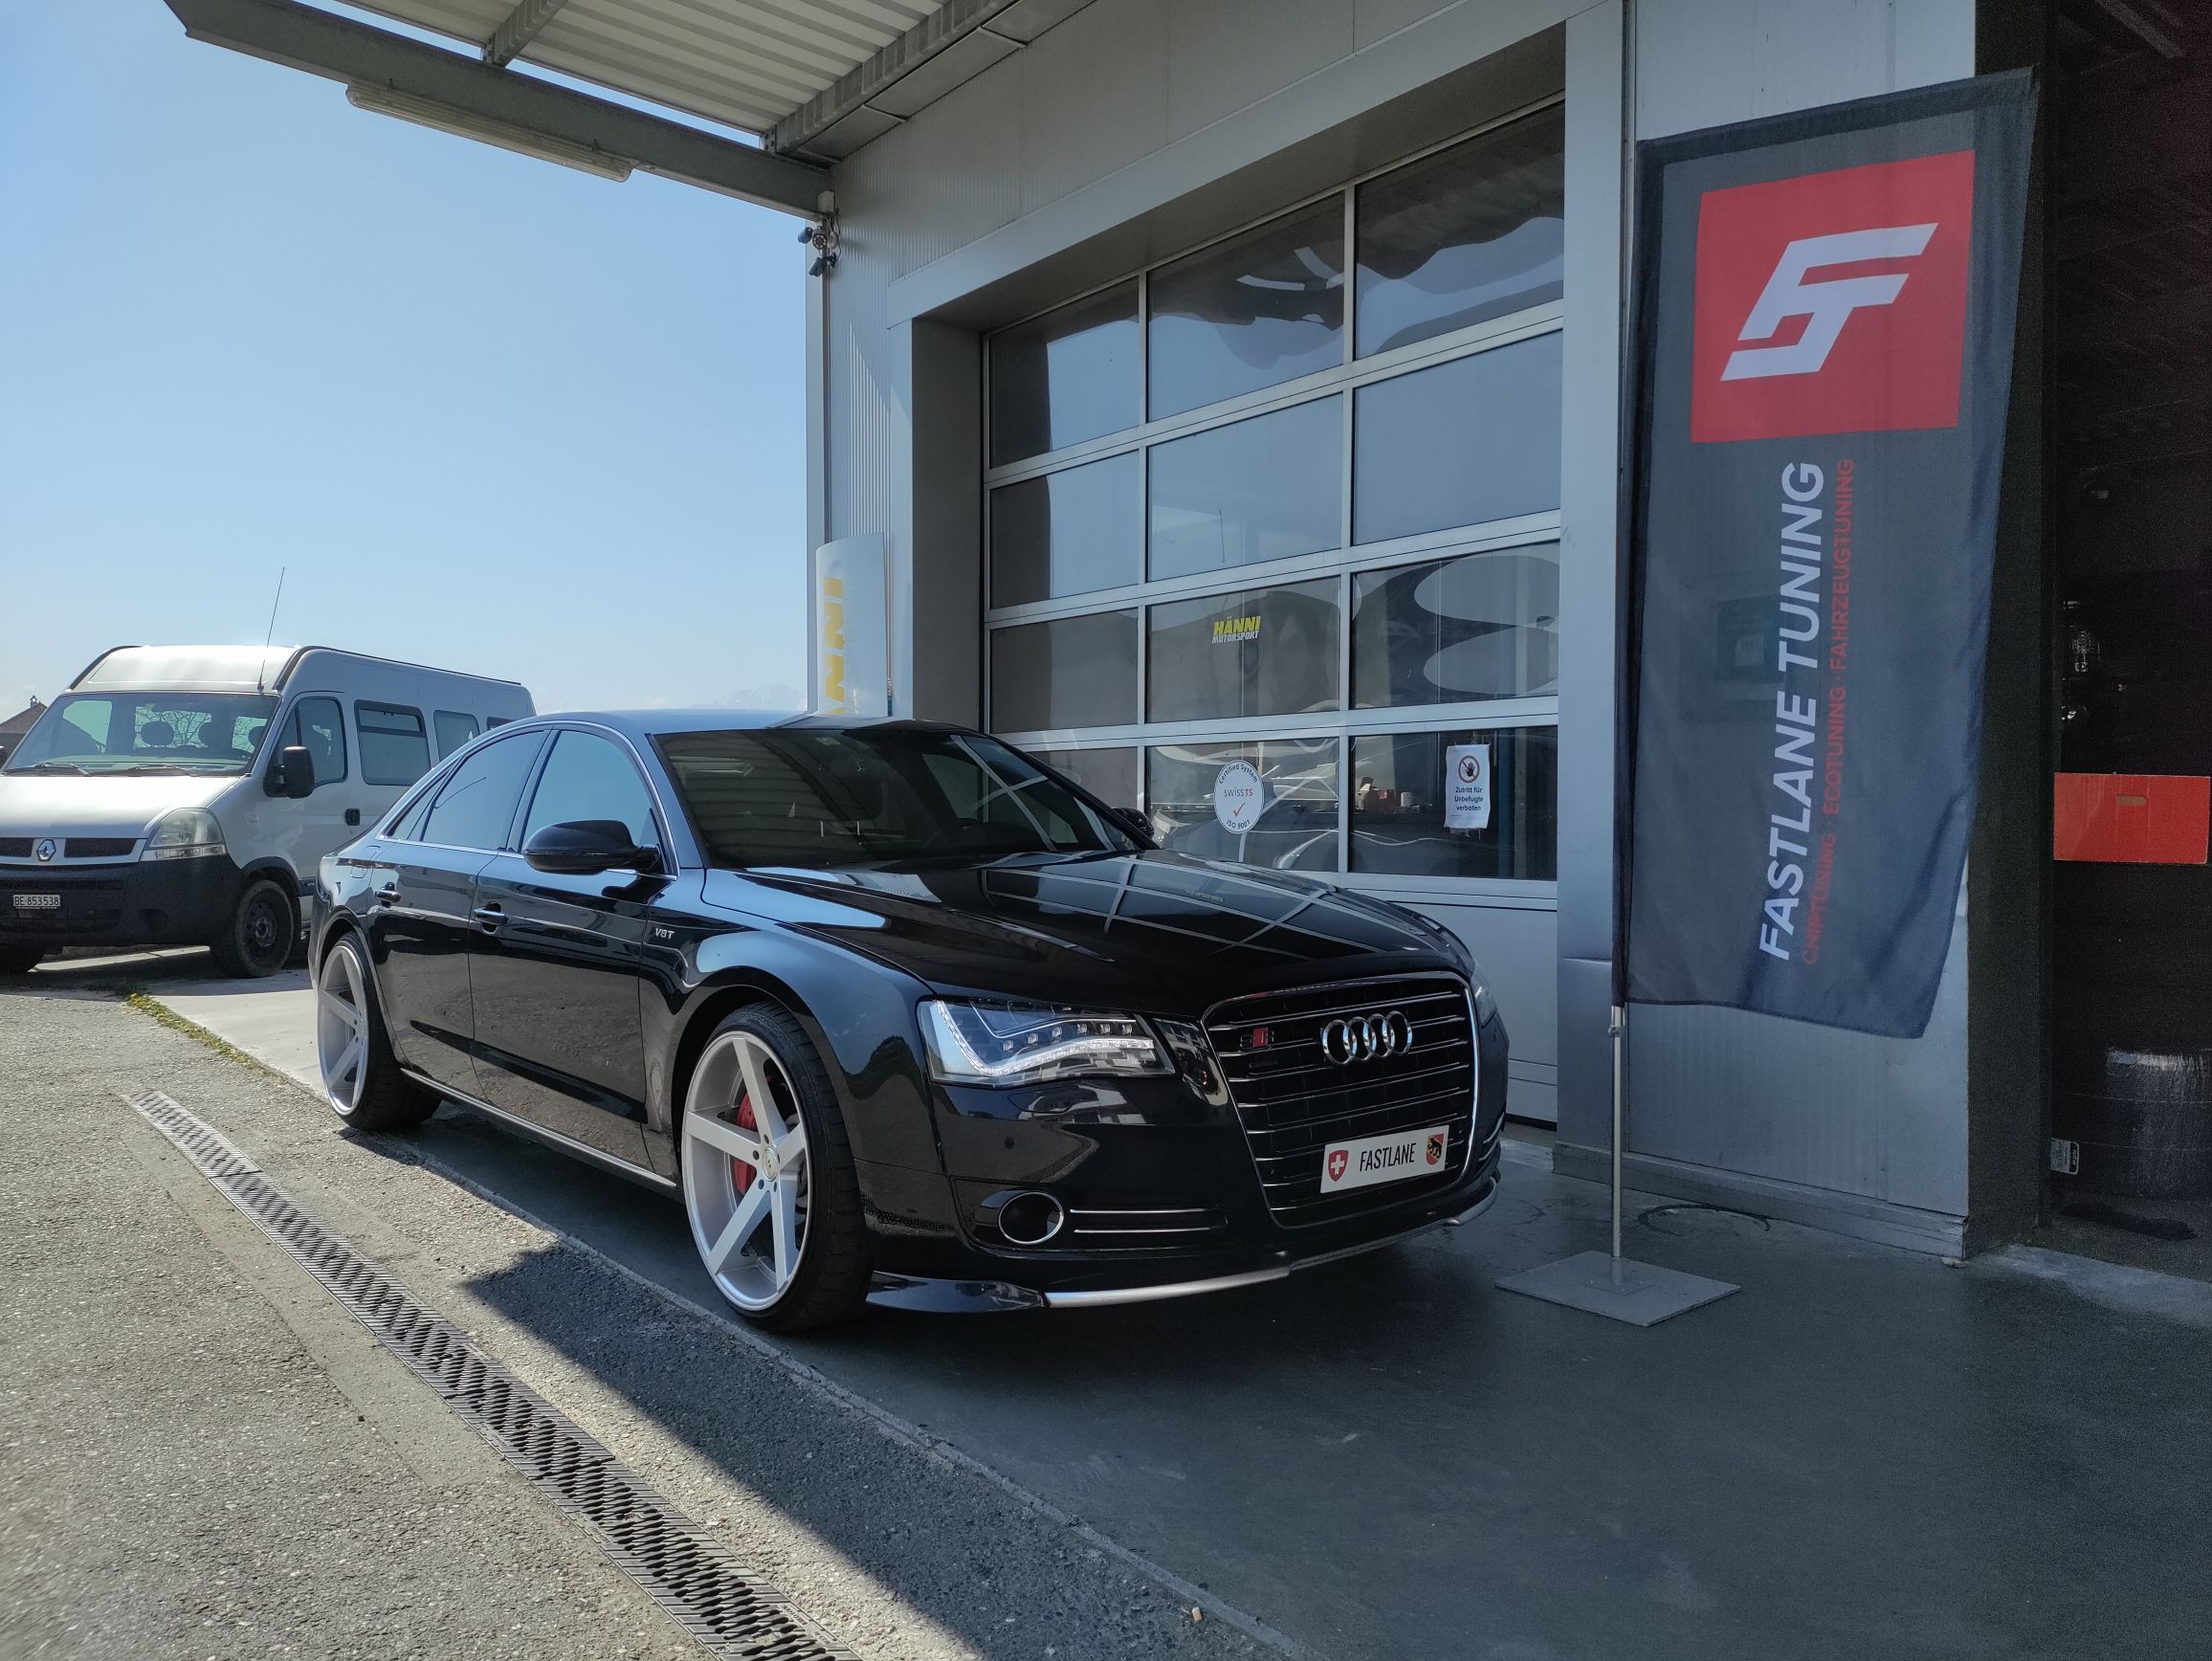 Ein schwarzer Audi A8 4.2 Liter V8 TDI steht vor der Garage neben der Fastlane Tuning Schweiz Flagge